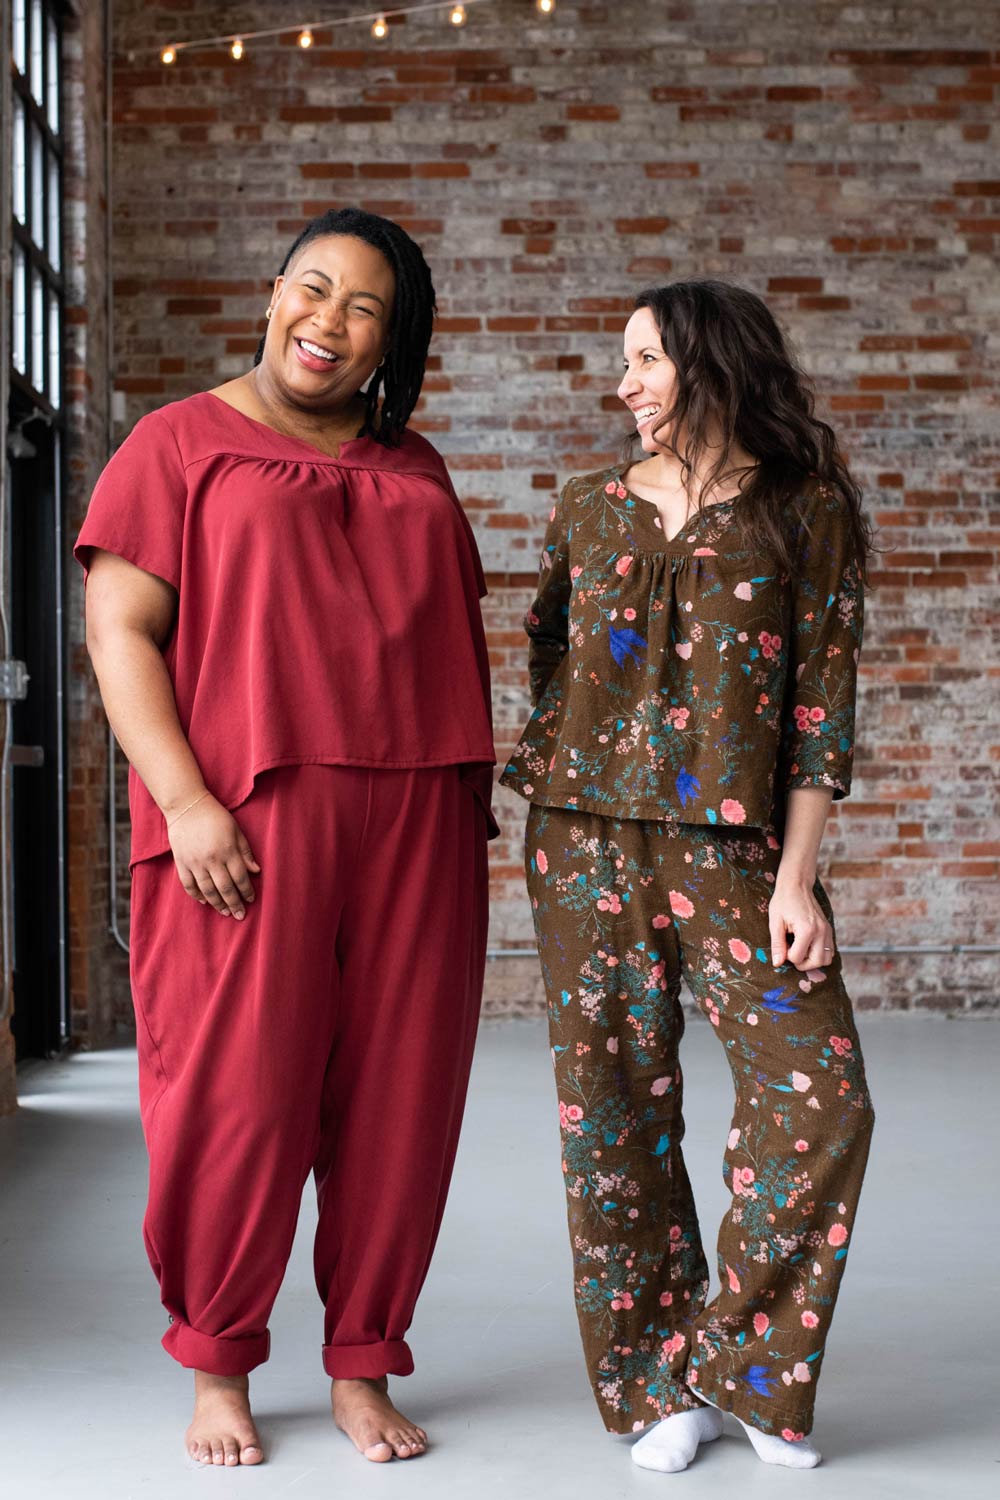 Meg and Ashley wearing Nocturne Pajamas